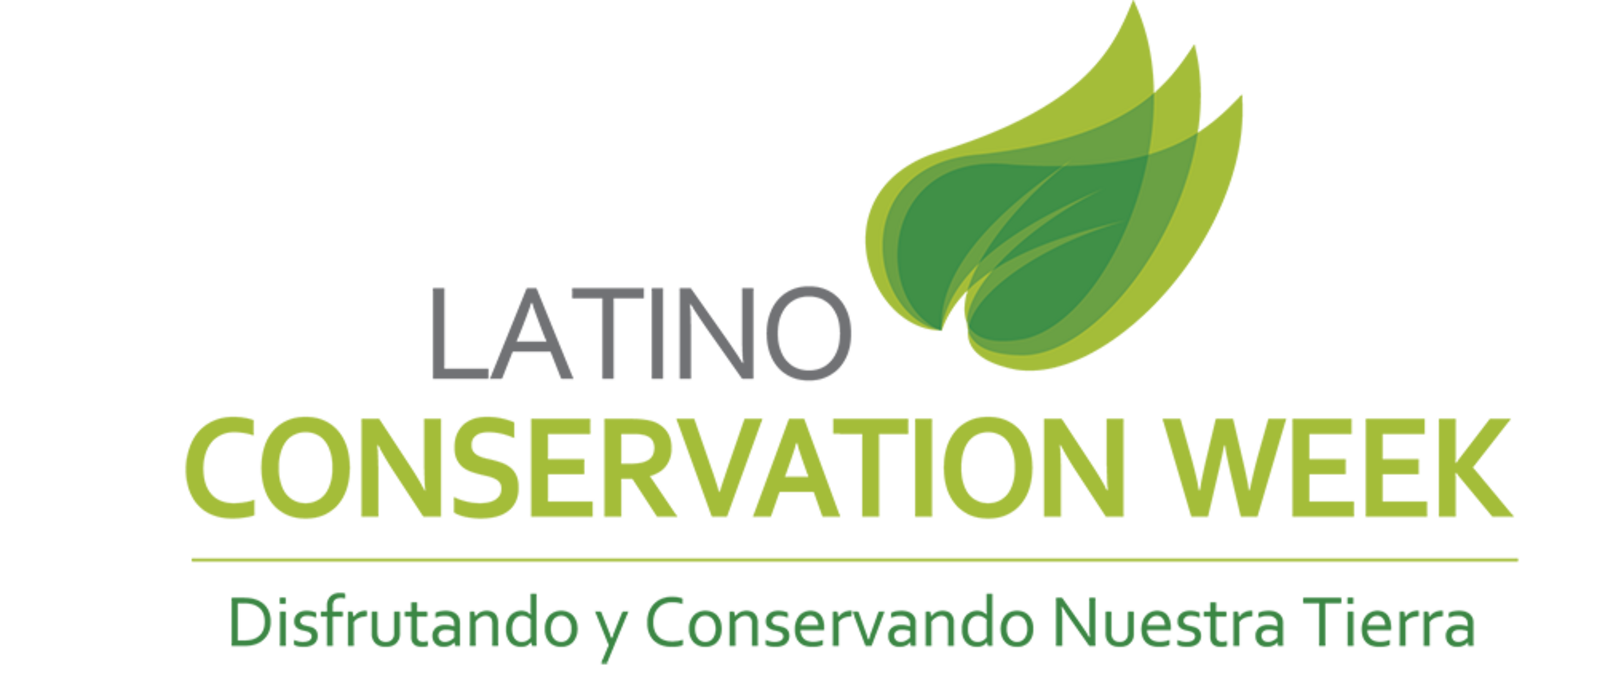 Latino Conservation Week logo